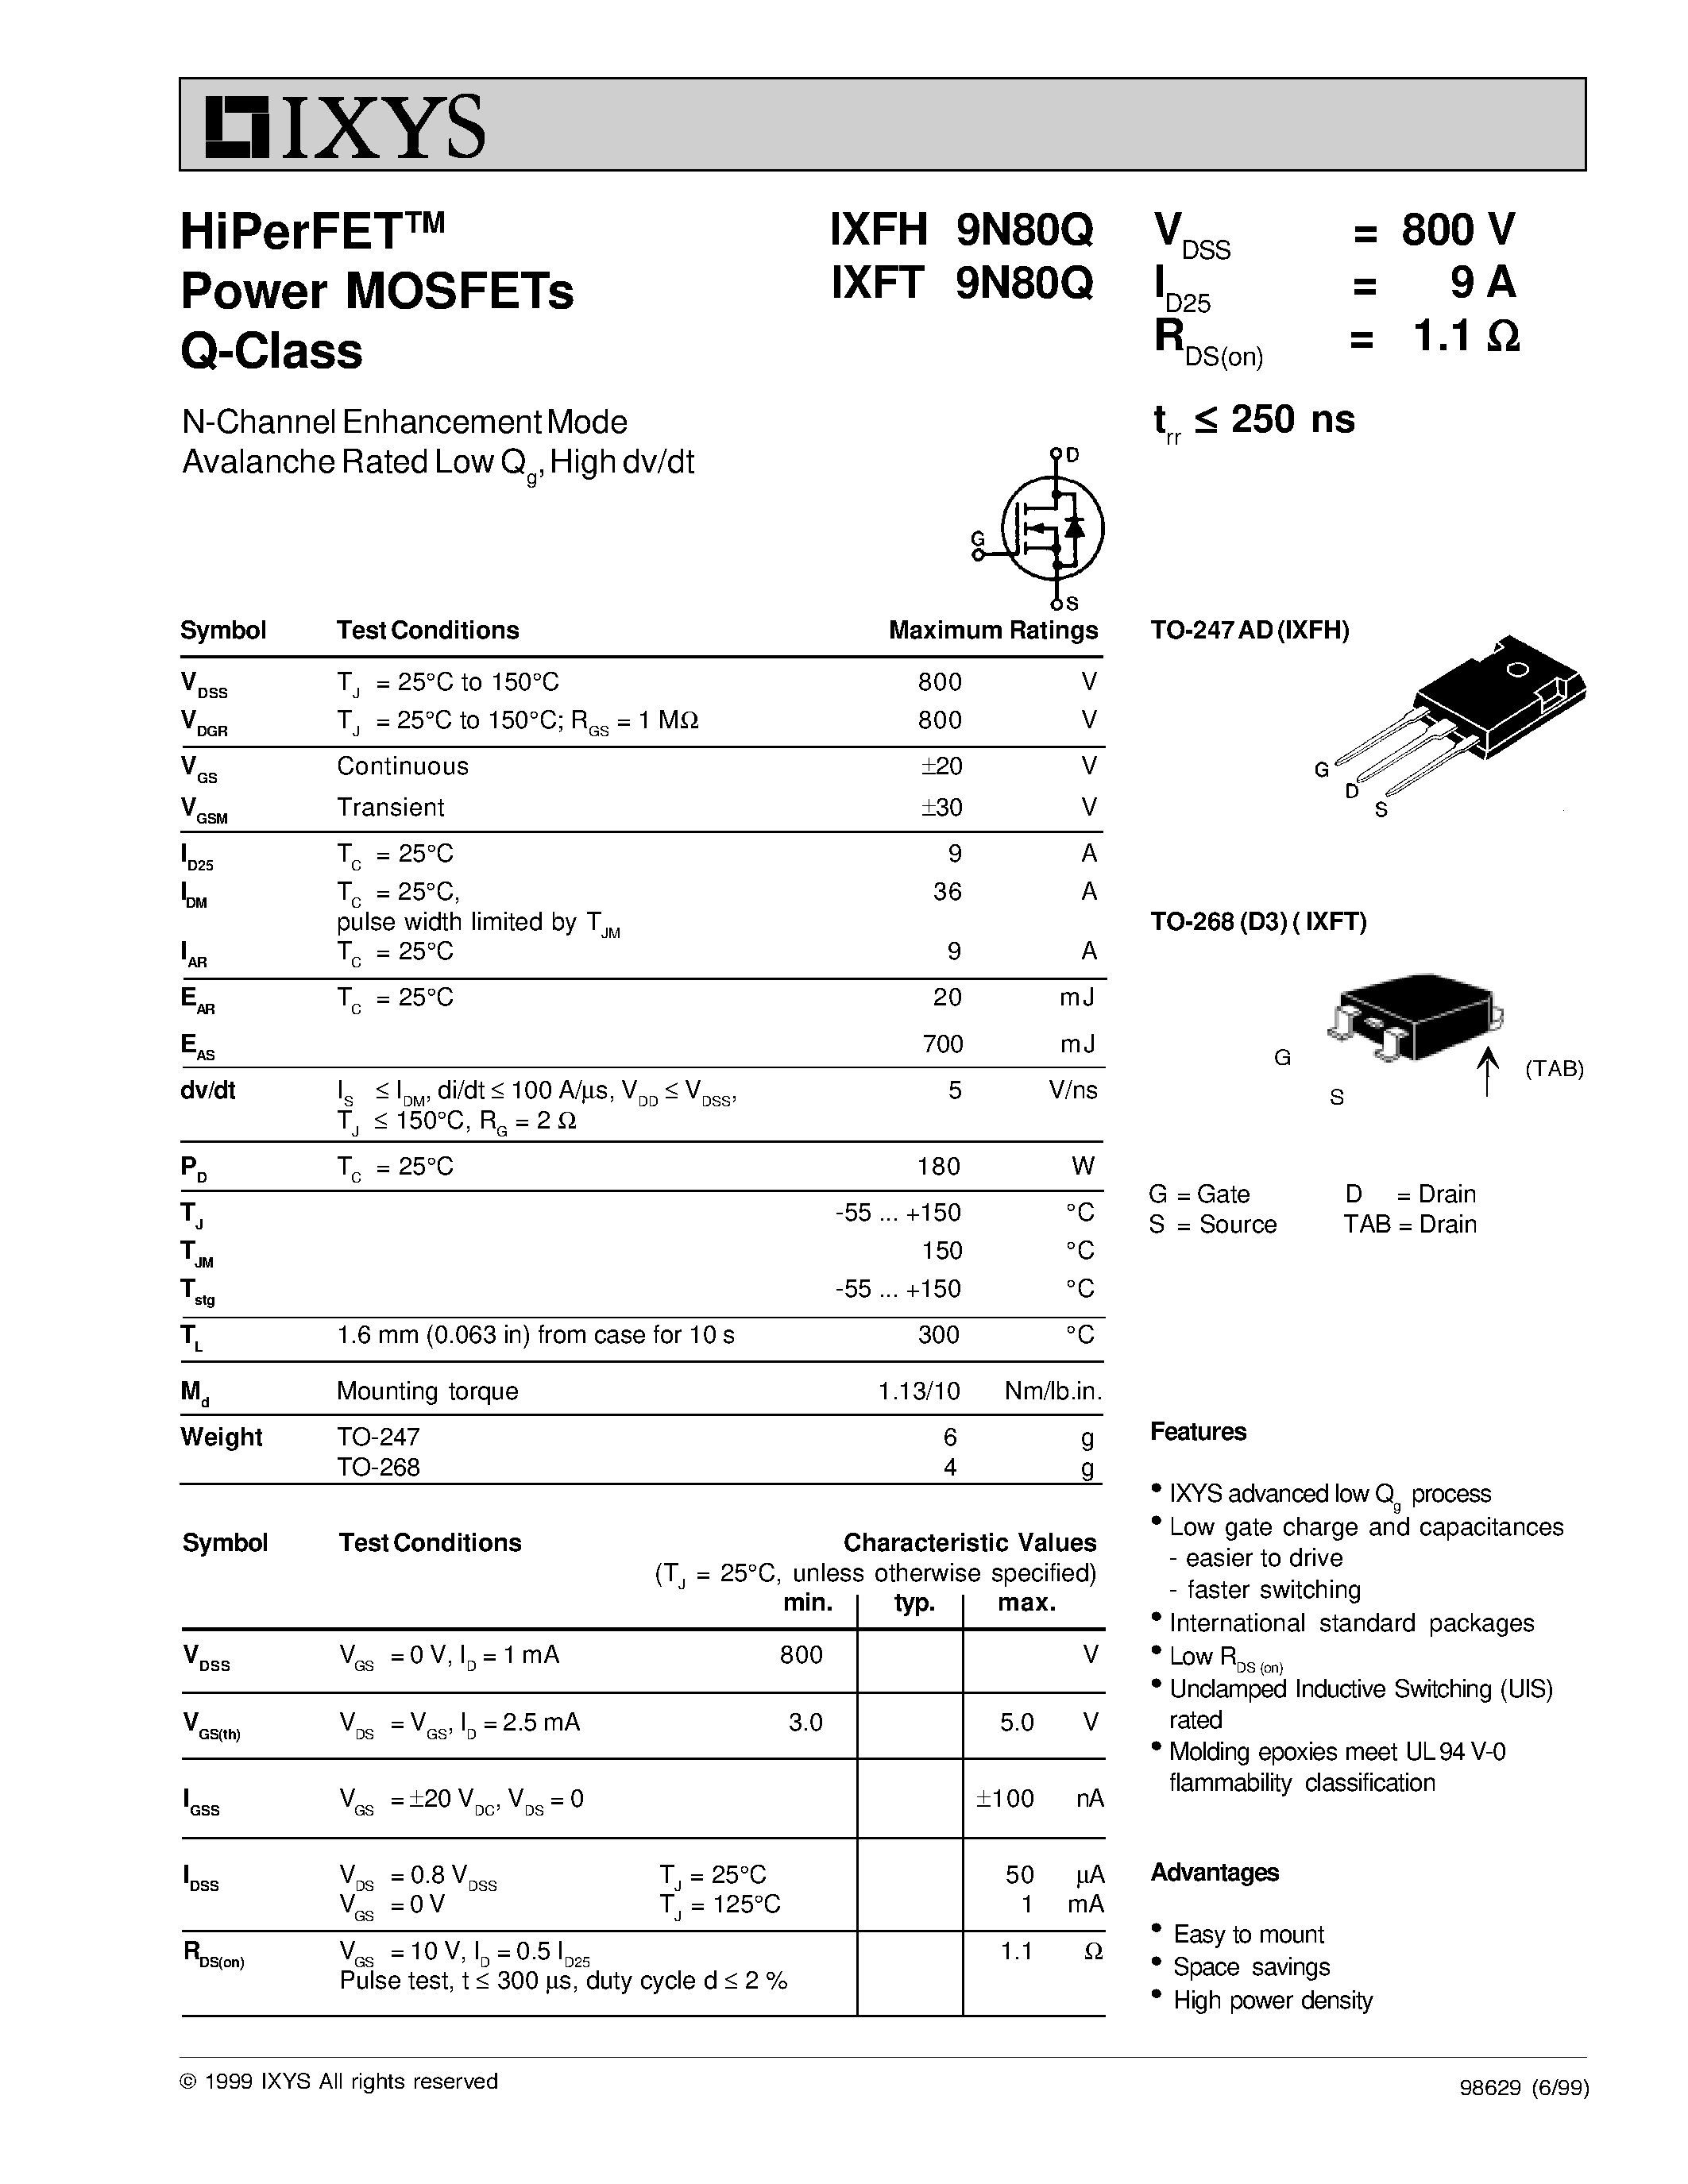 Даташит IXFT9N80Q - HiPerFET Power MOSFETs Q-Class страница 1